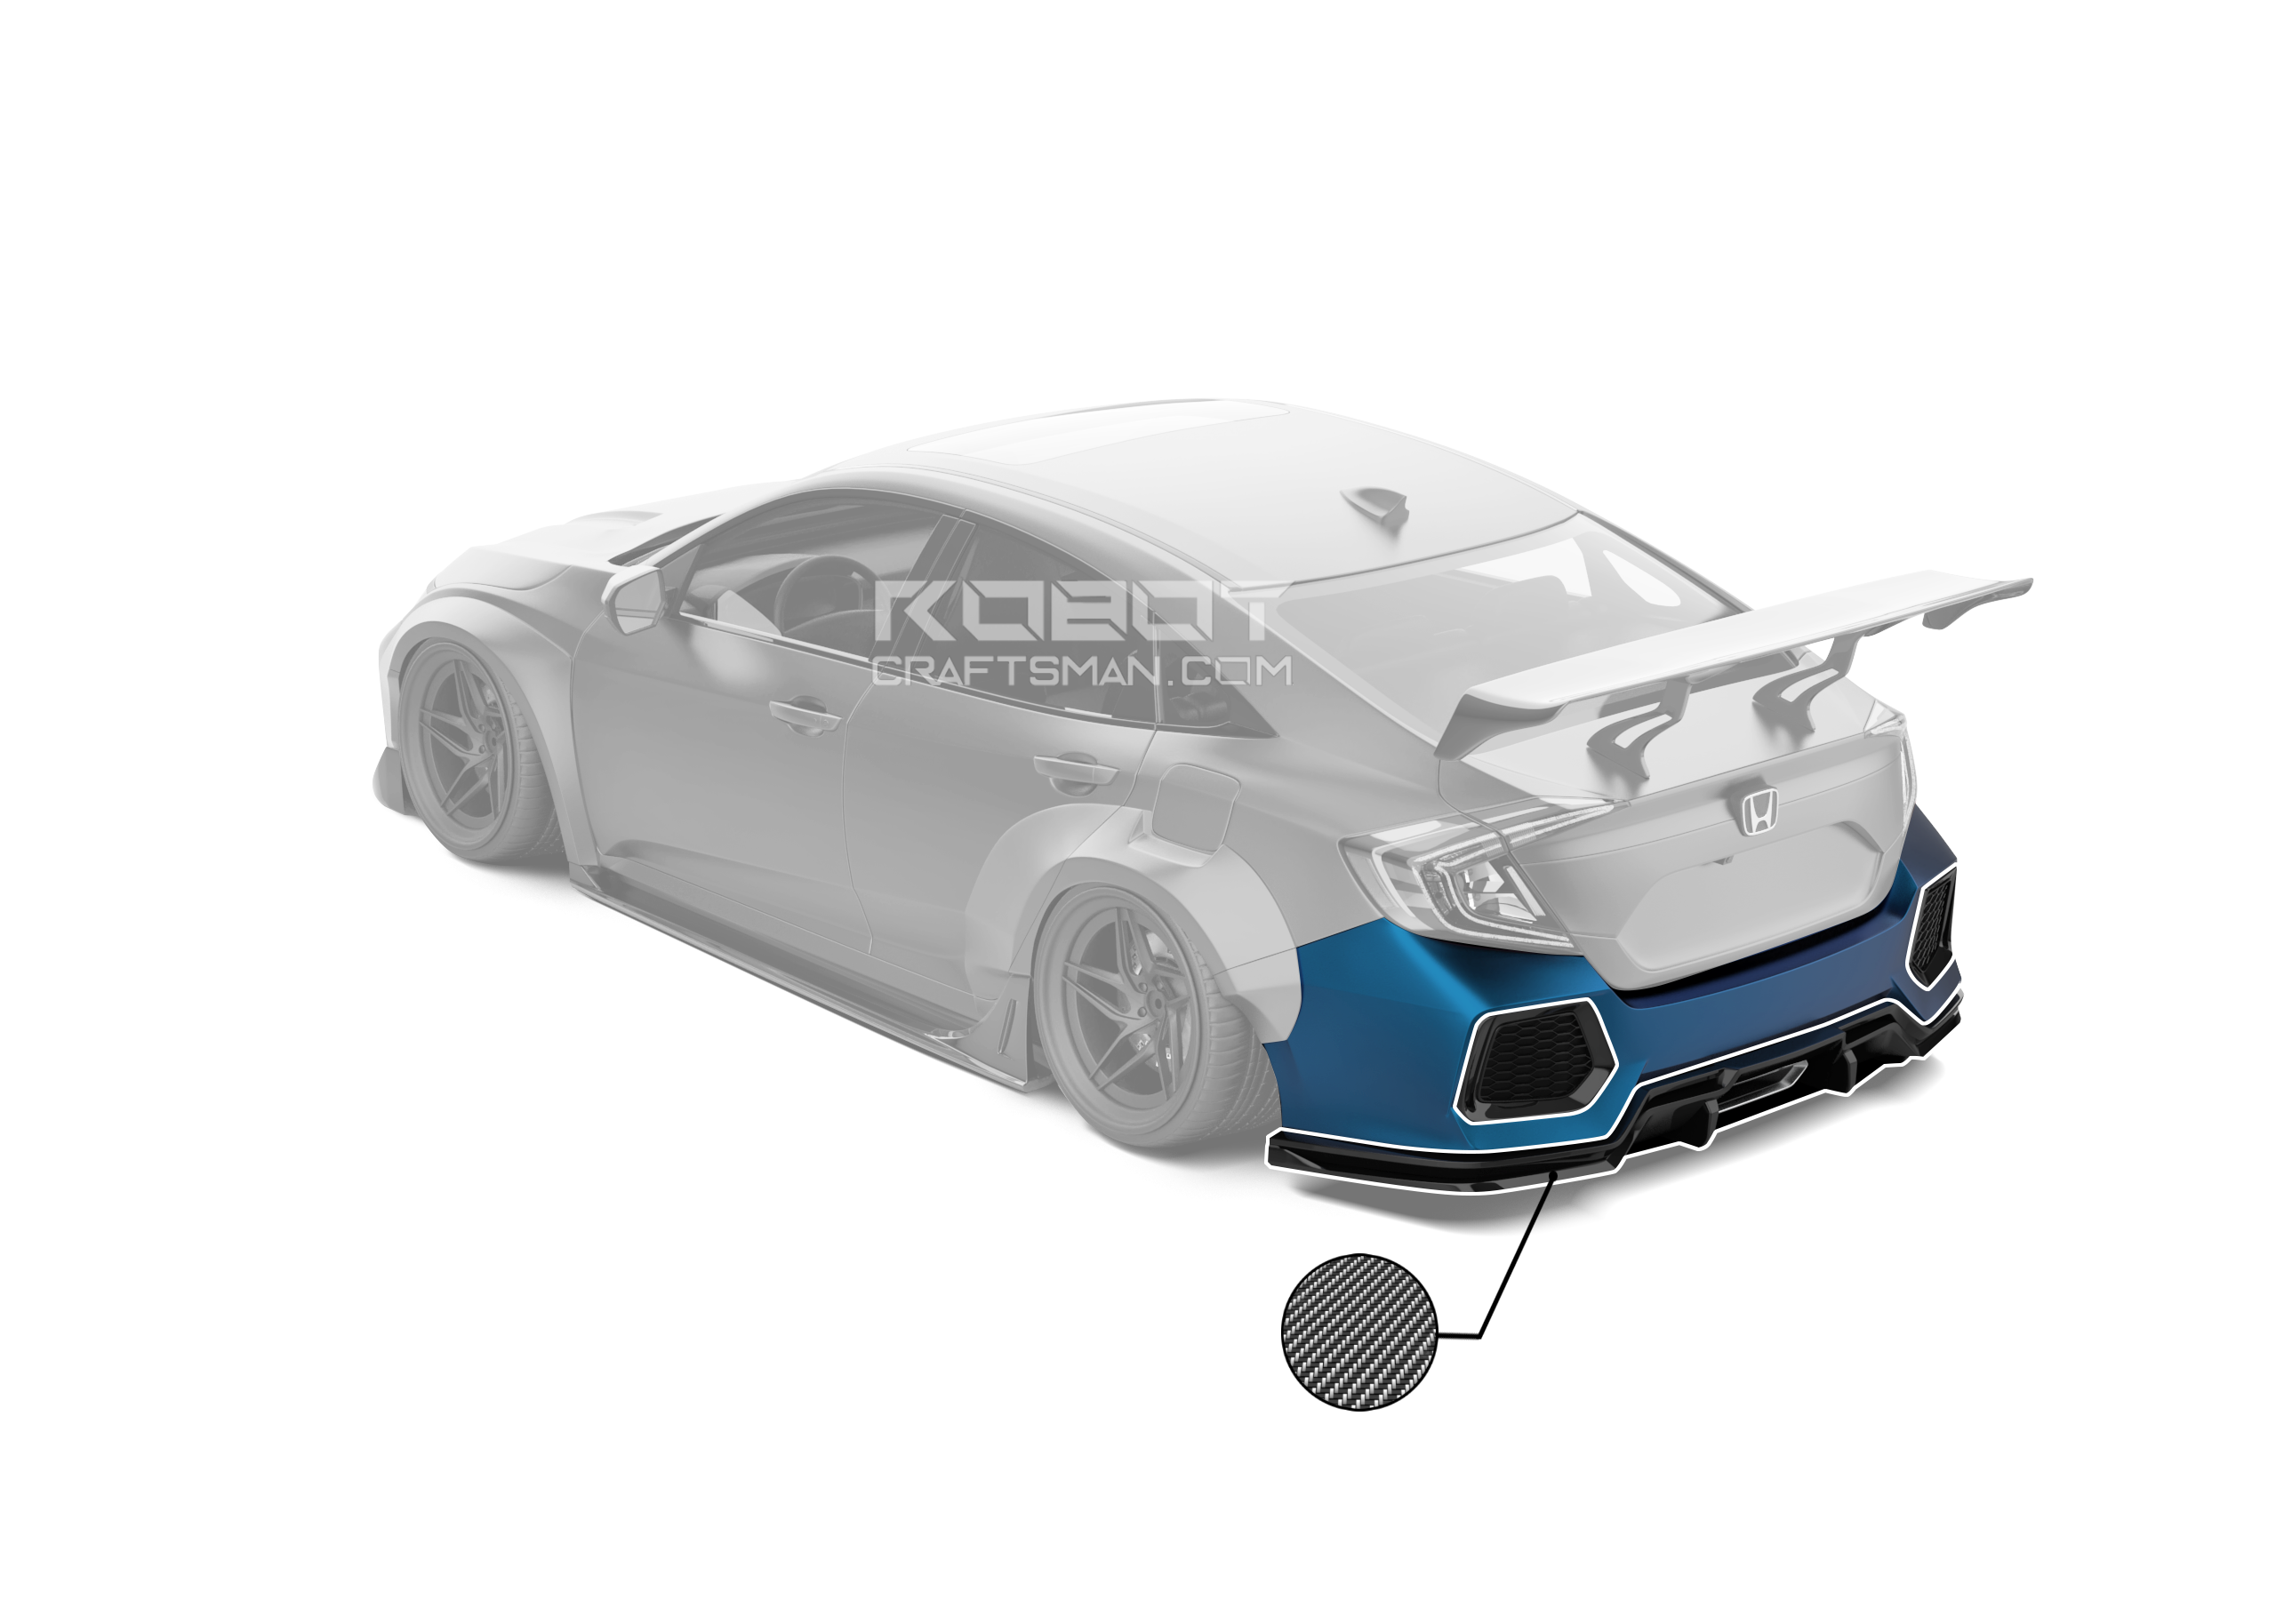 ROBOT CRAFTSMAN Carbon Fiber Rear Bumper & Rear Diffuser For Honda Civic 10th Gen